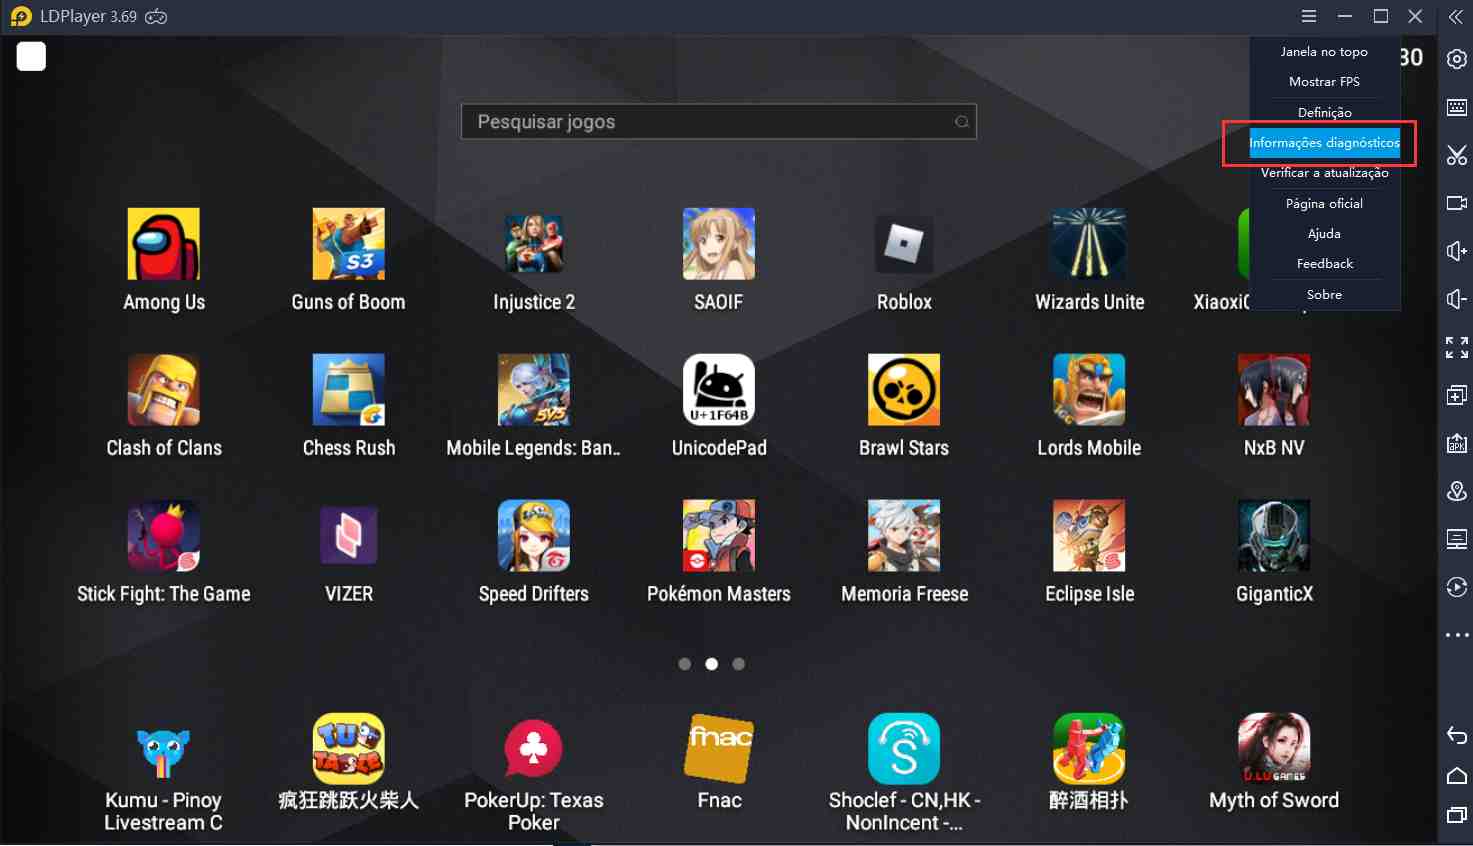 Winlator: novo emulador para Android promete rodar jogos de PC no celular 